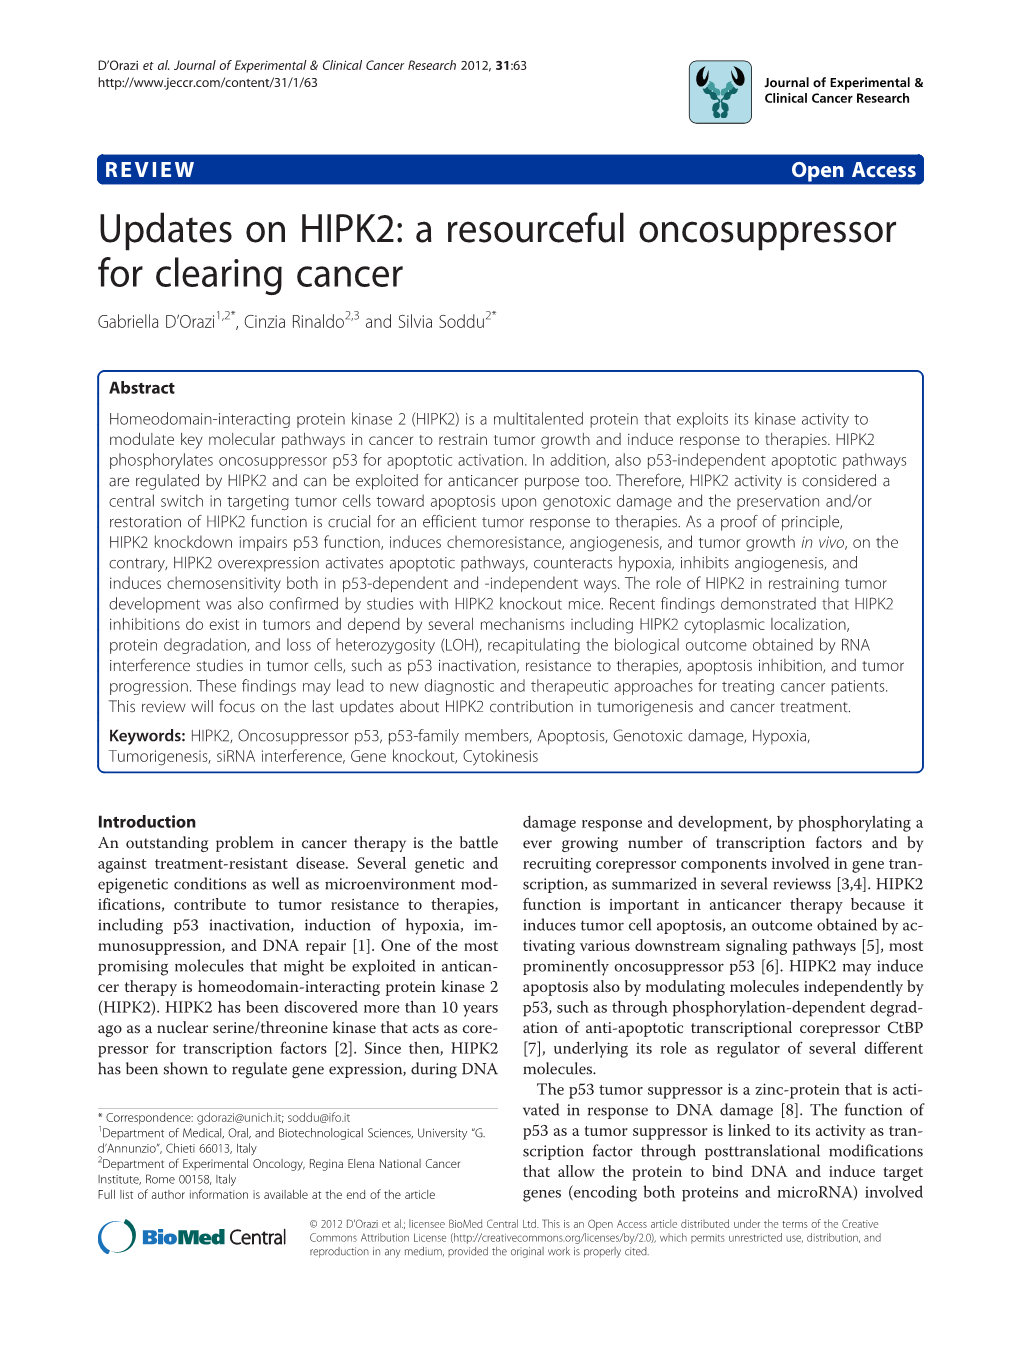 Updates on HIPK2: a Resourceful Oncosuppressor for Clearing Cancer Gabriella D’Orazi1,2*, Cinzia Rinaldo2,3 and Silvia Soddu2*